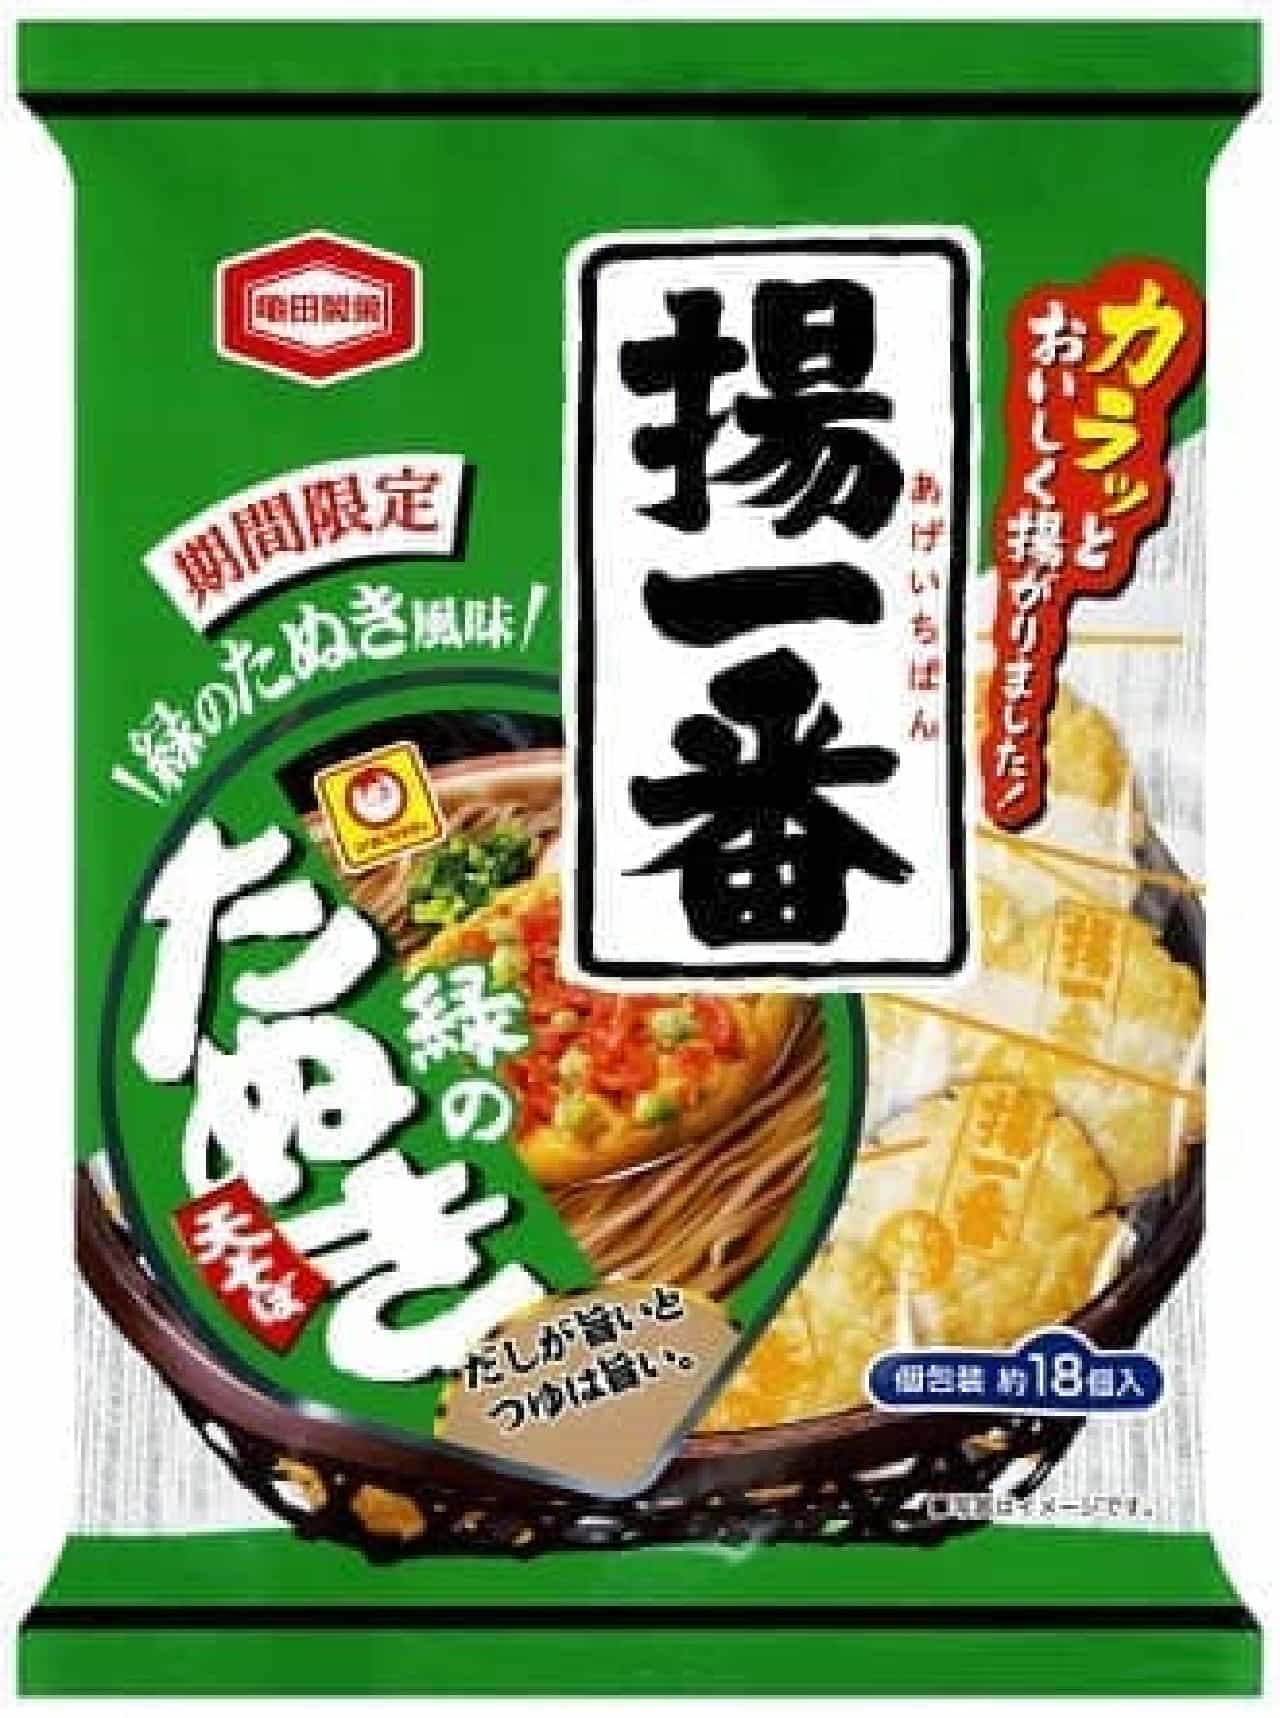 亀田製菓「109g 揚一番 緑のたぬき風味」